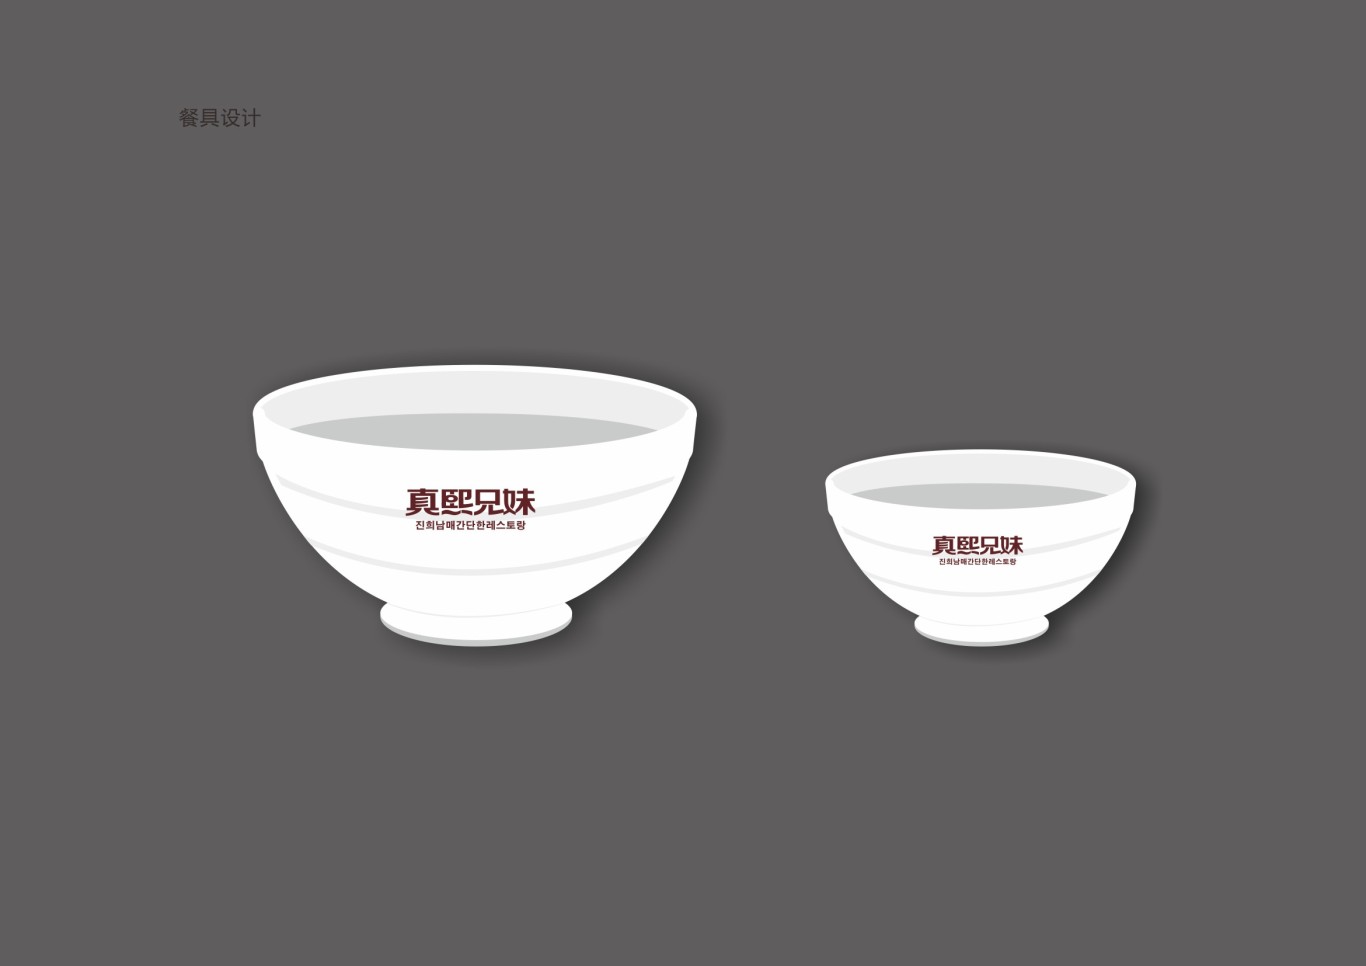 韩式简餐连锁品牌设计图30